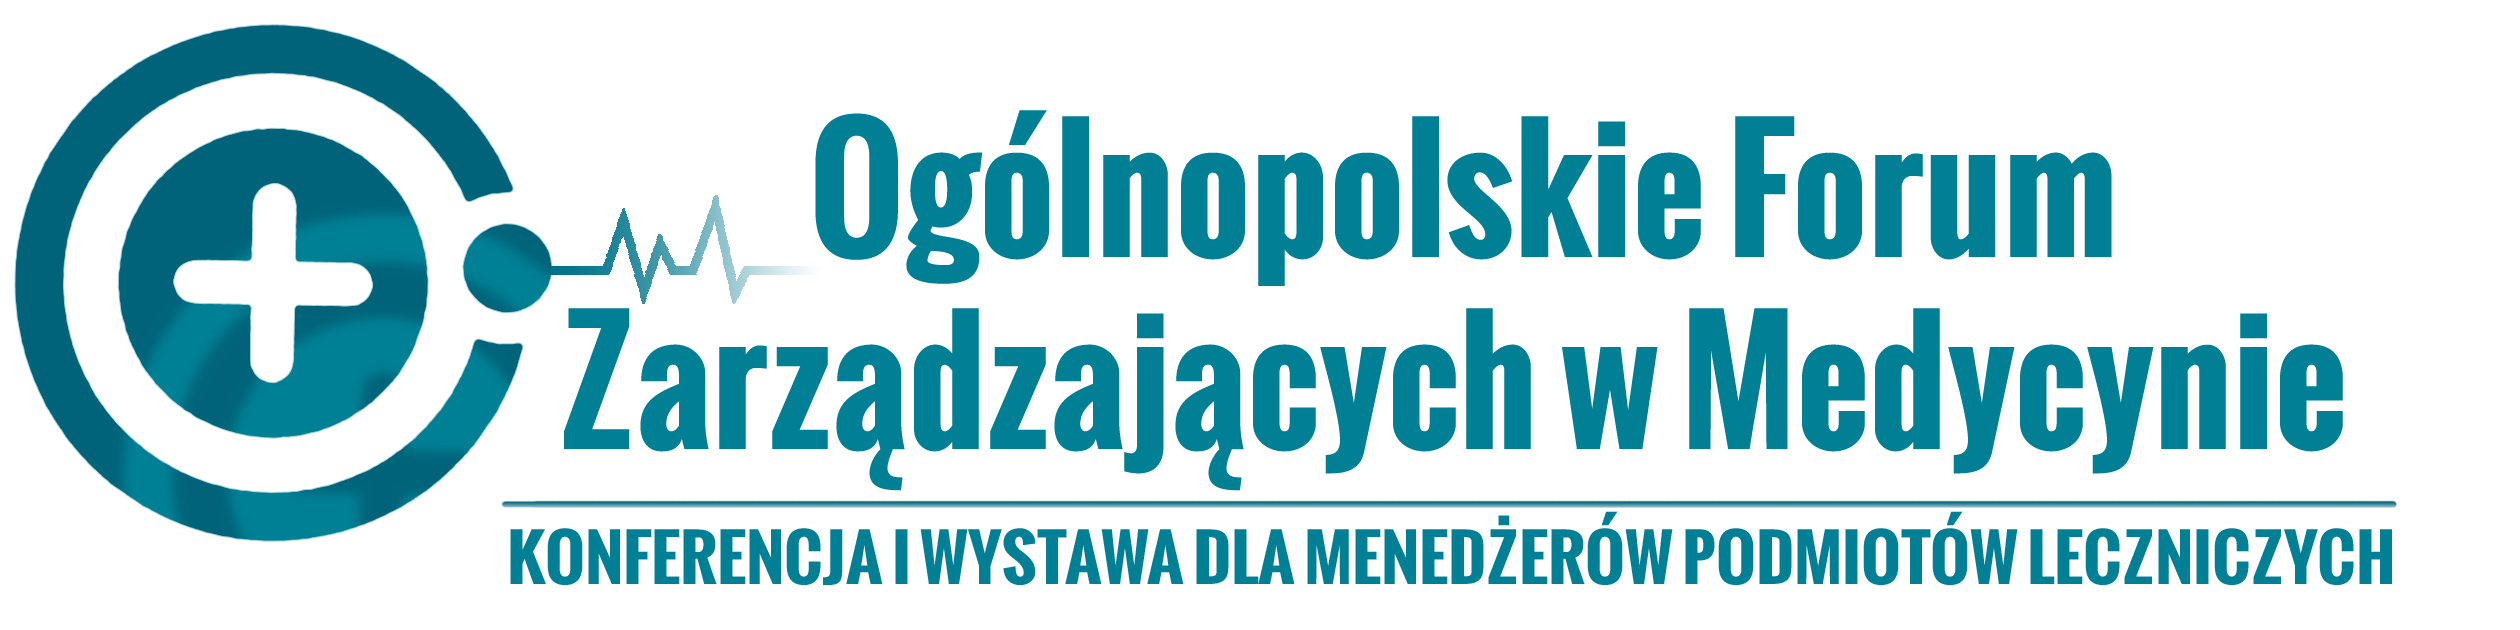 Oglnopolskie Forum Zarzdzajcych w Medycynie